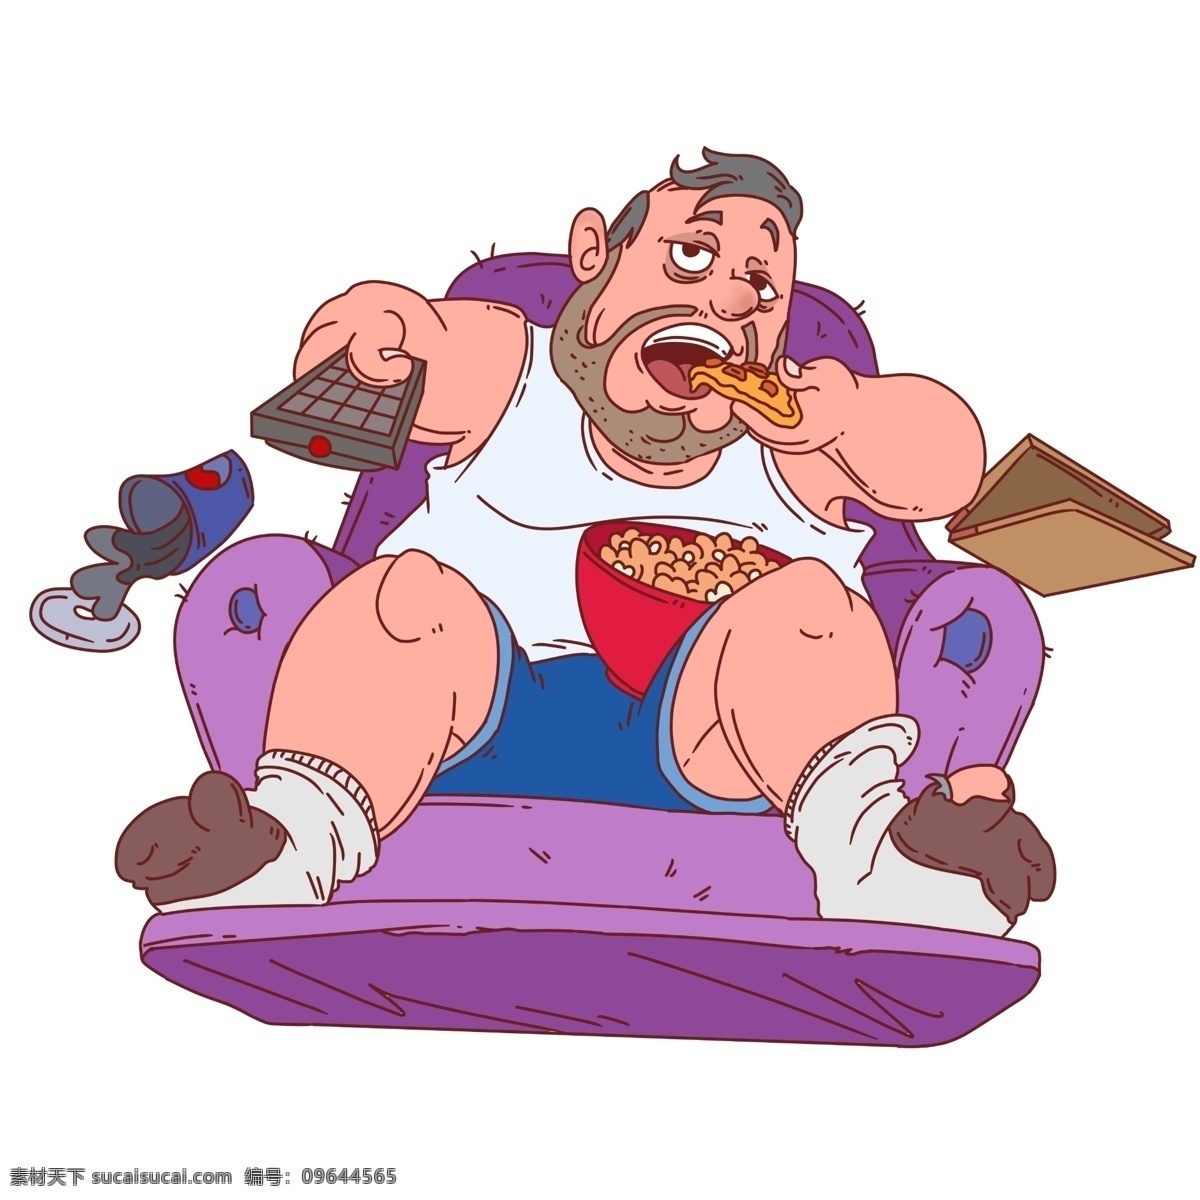 宅 在家 看 电视 男孩 红色的美食 灰色的笔记本 卡通人物 紫色的沙发 男 人物 手绘 插画 黑色的遥控器